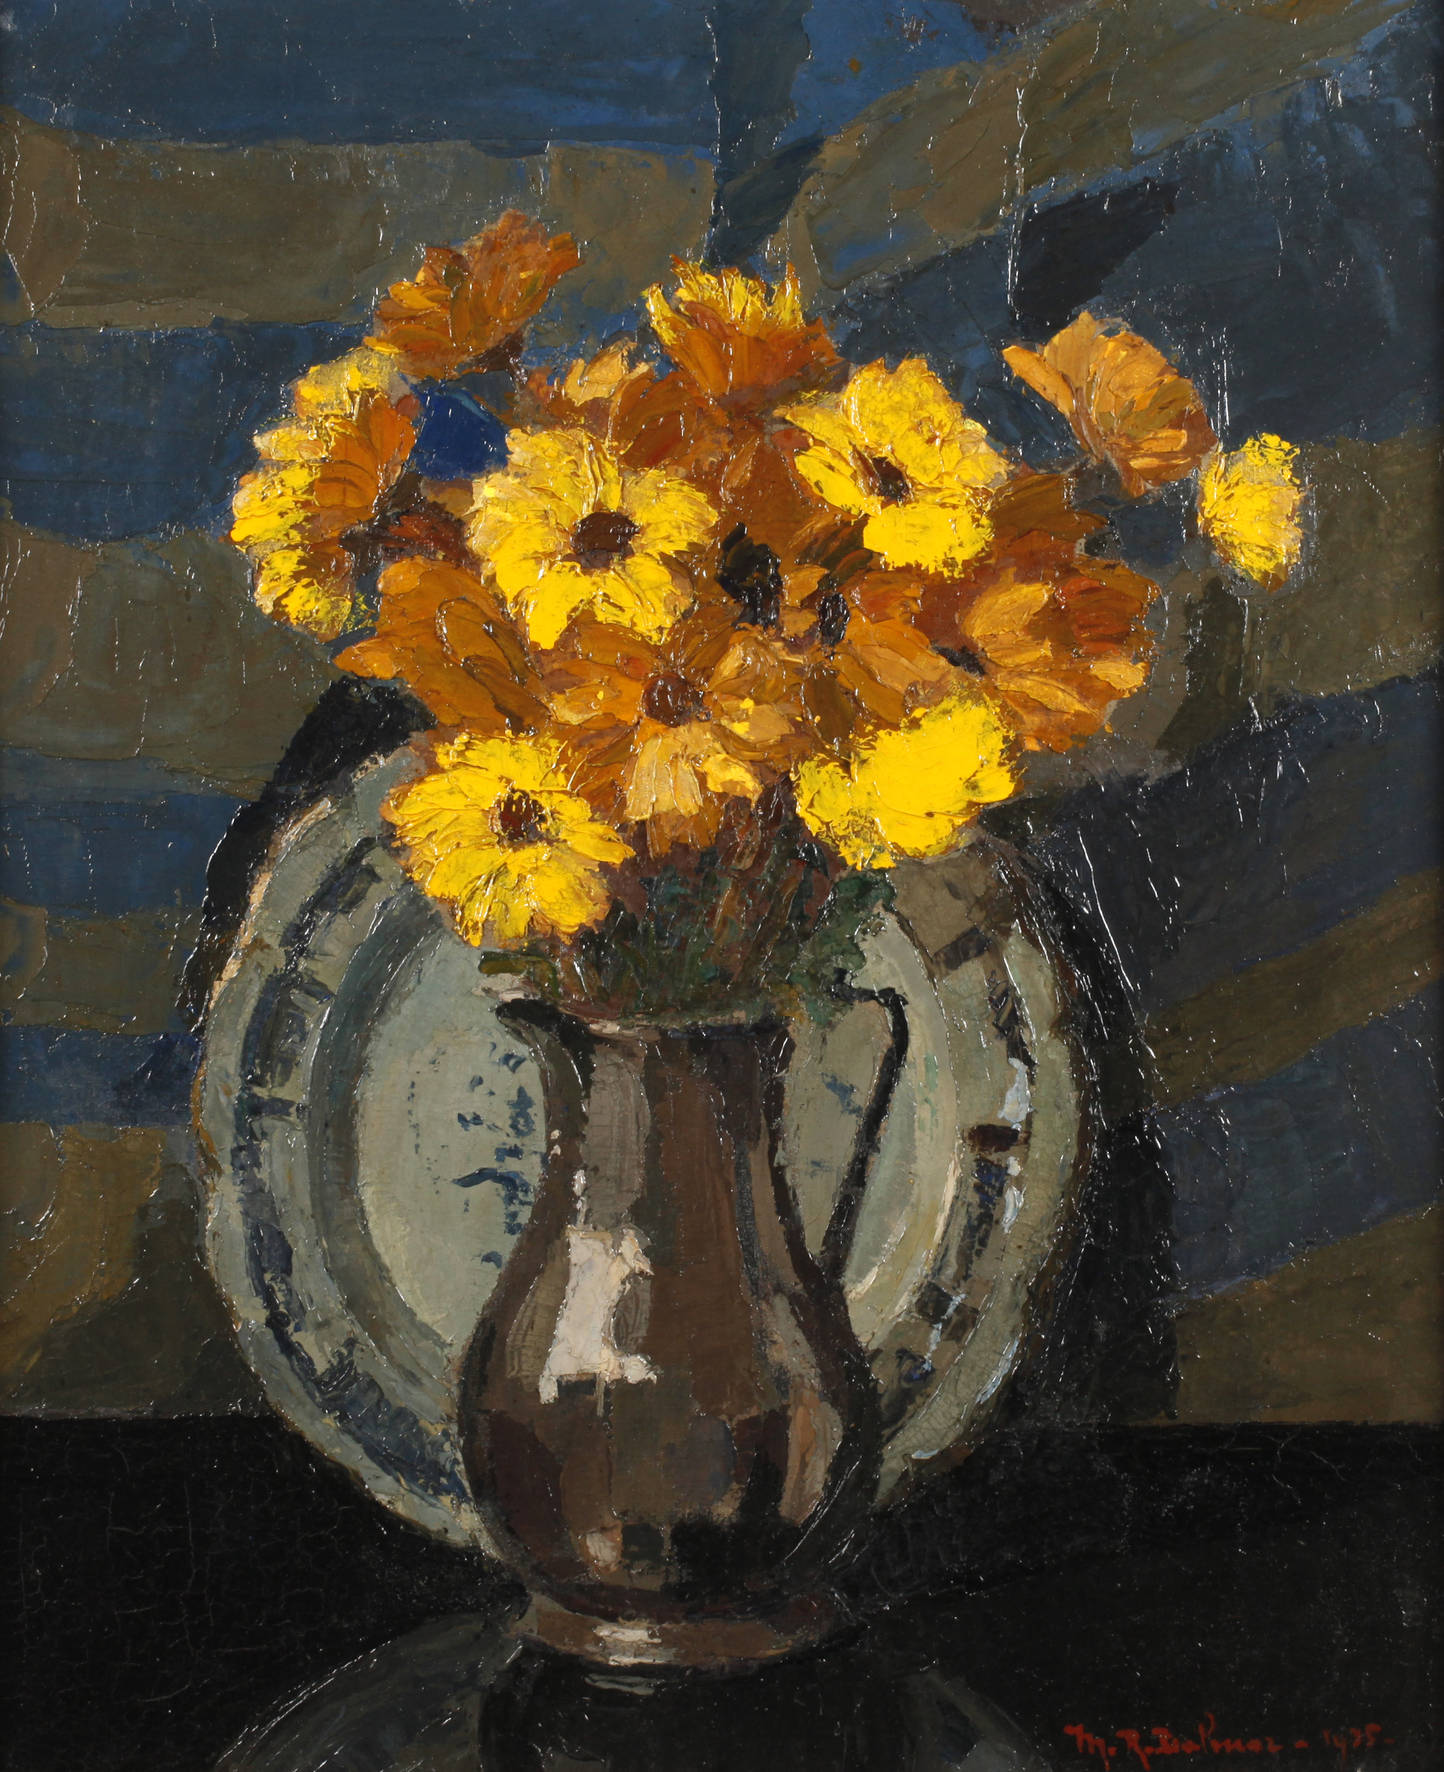 M. R. Balmer, Stillleben mit gelben Blumen